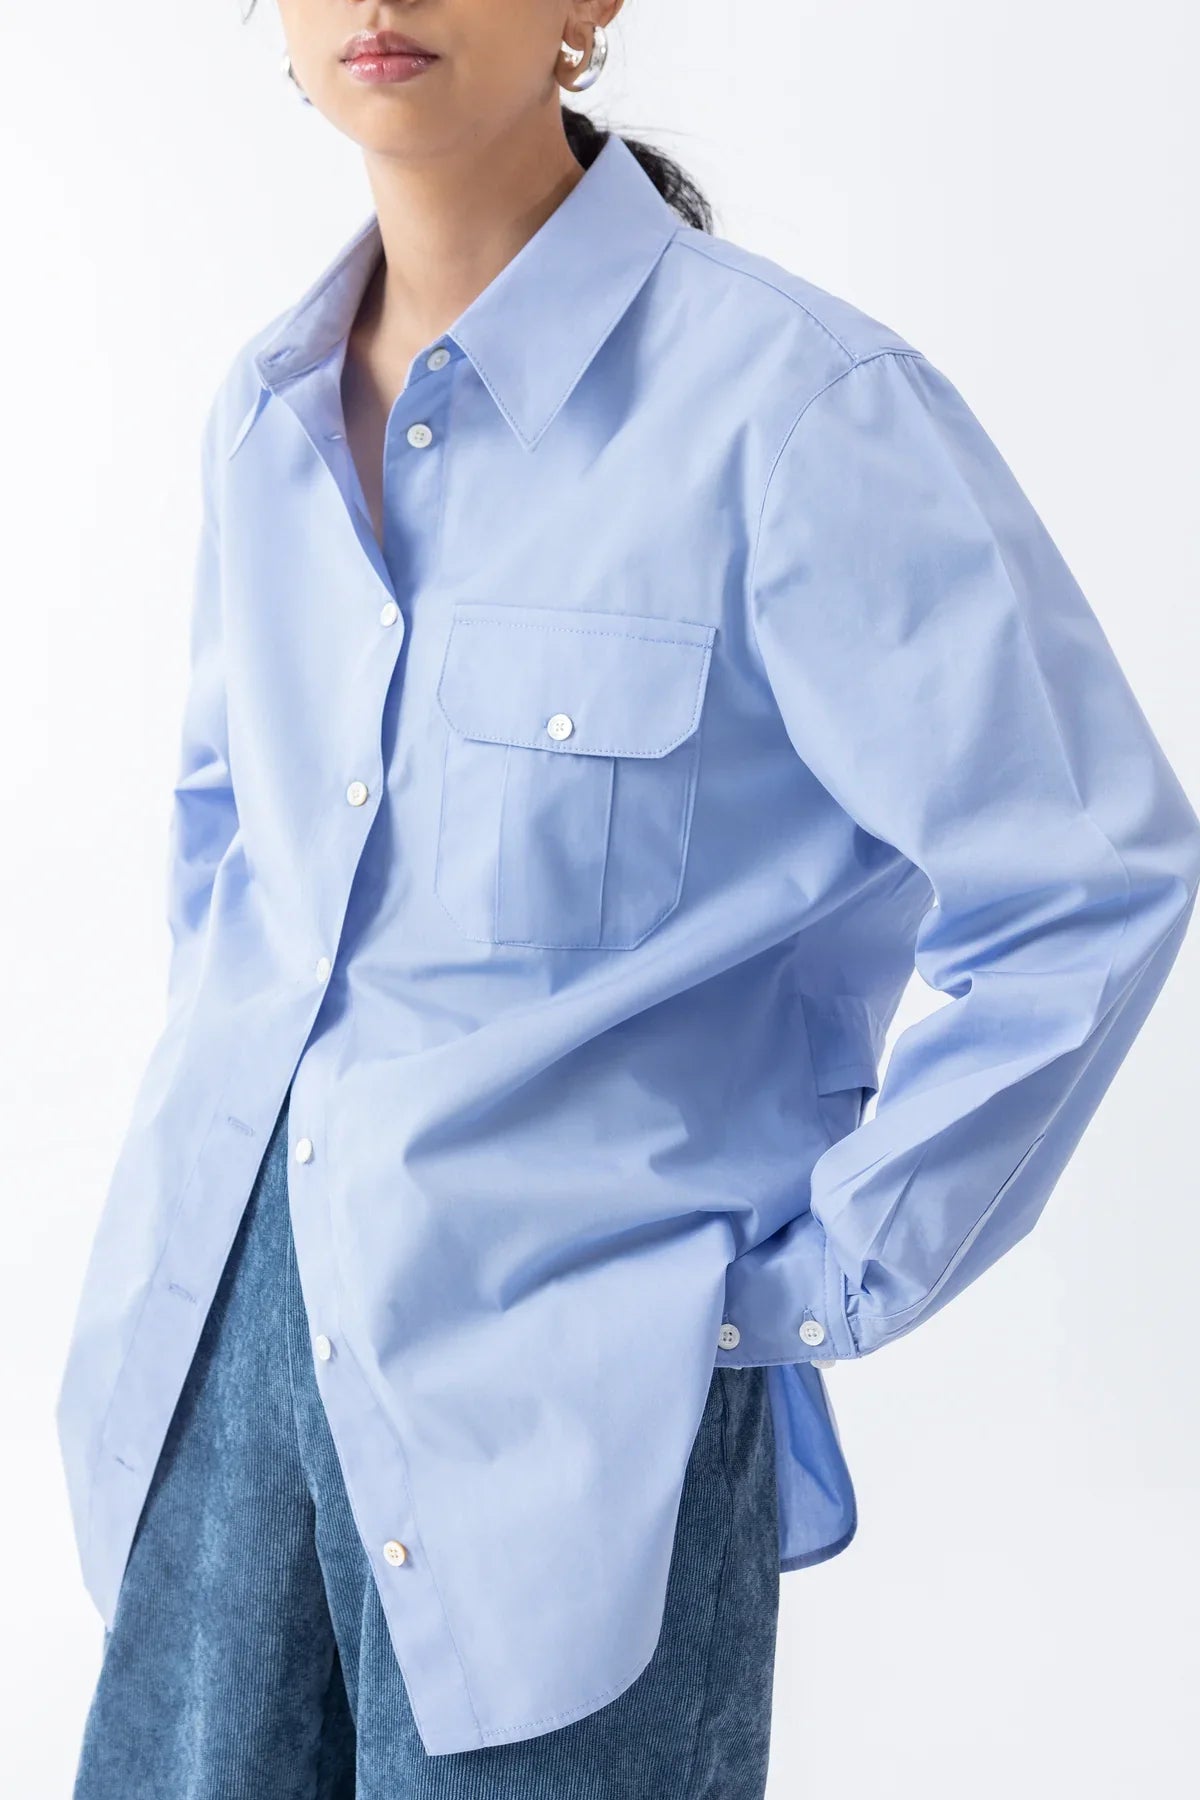 Z3 Boyfriend Material Blue Shirt